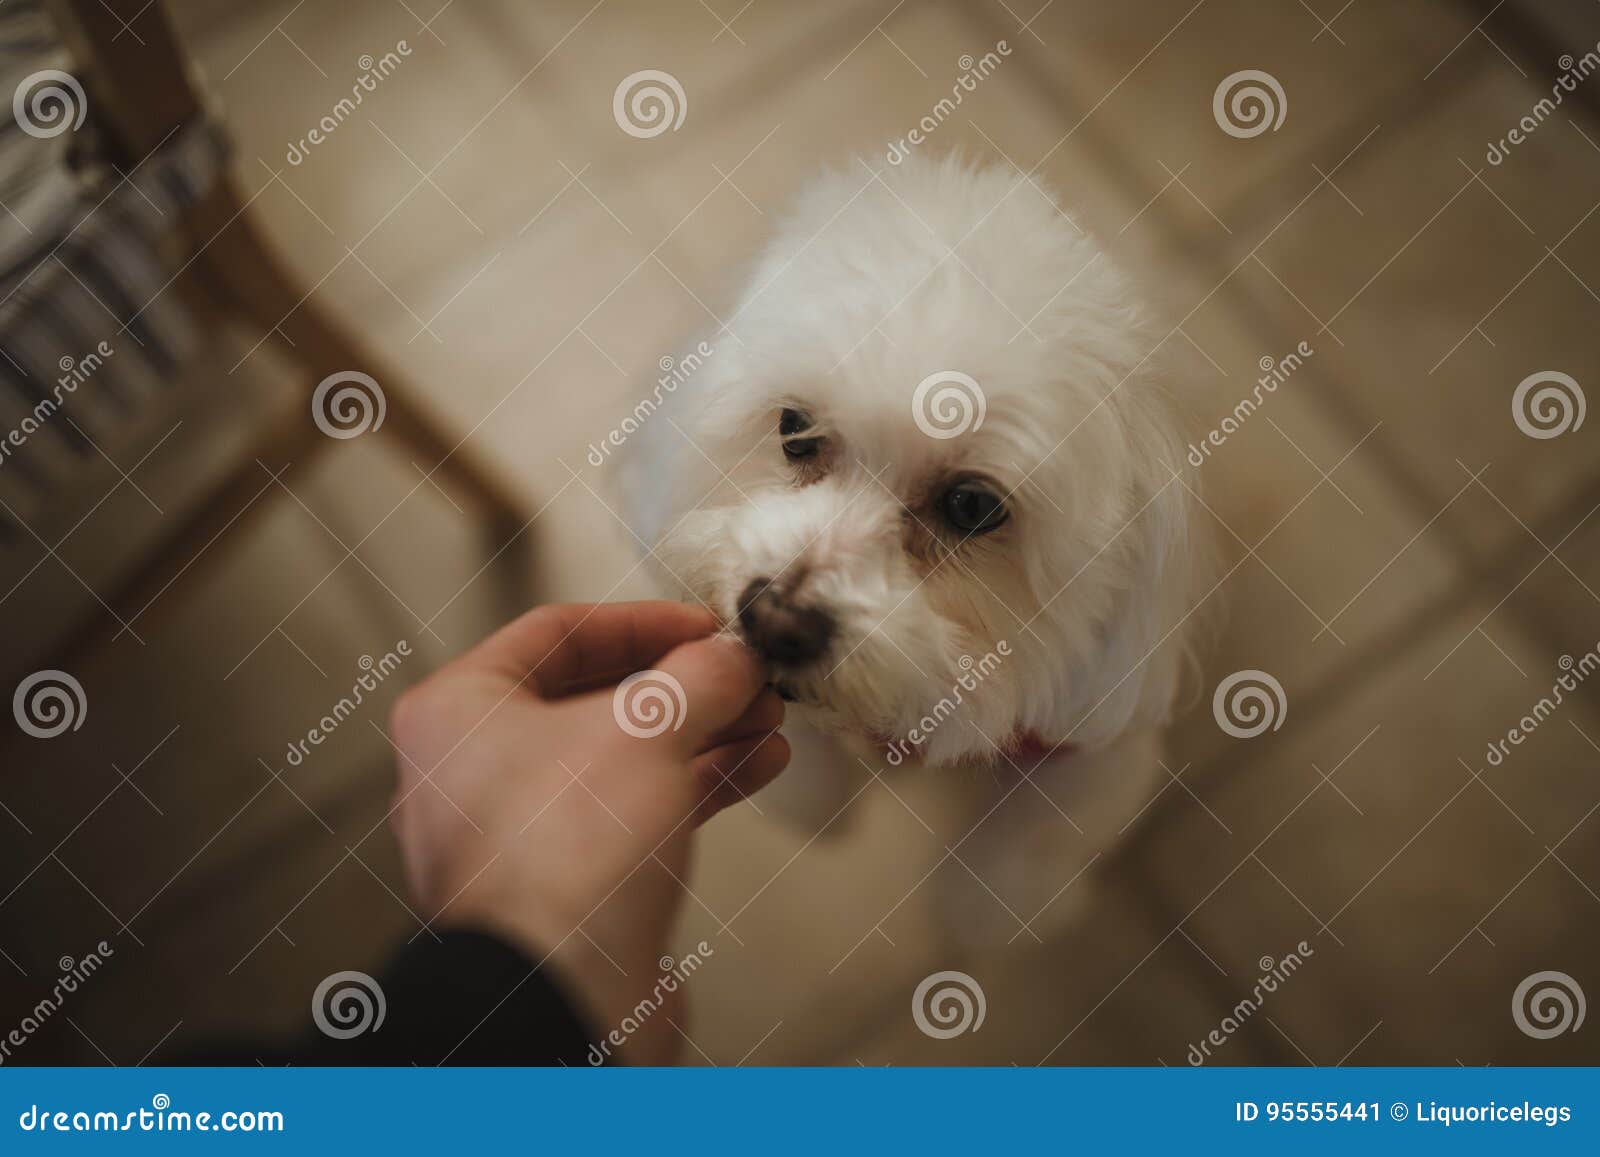 feeding dog a treat